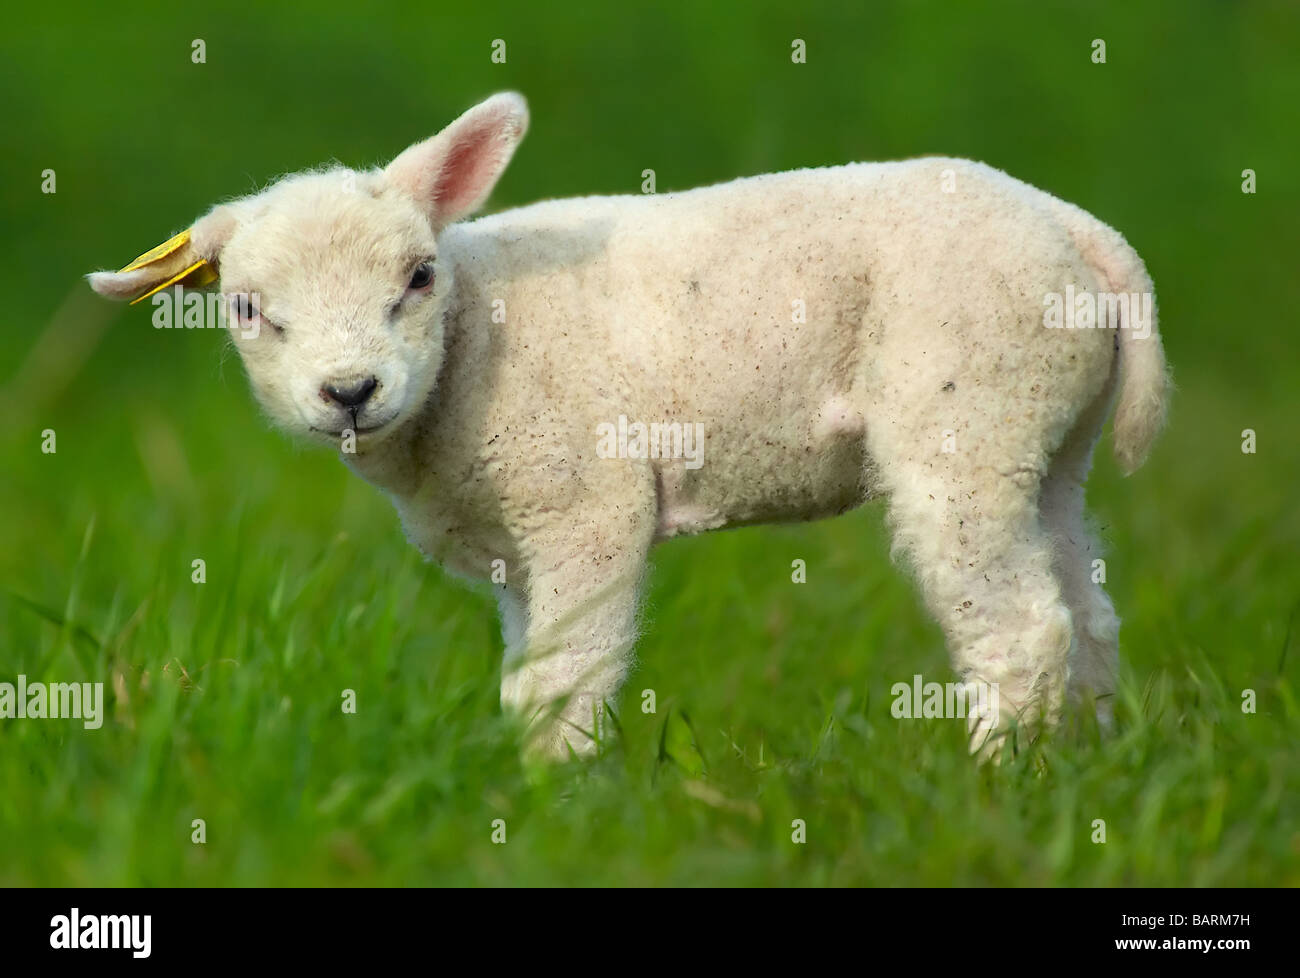 Carino agnello sull'erba Foto Stock